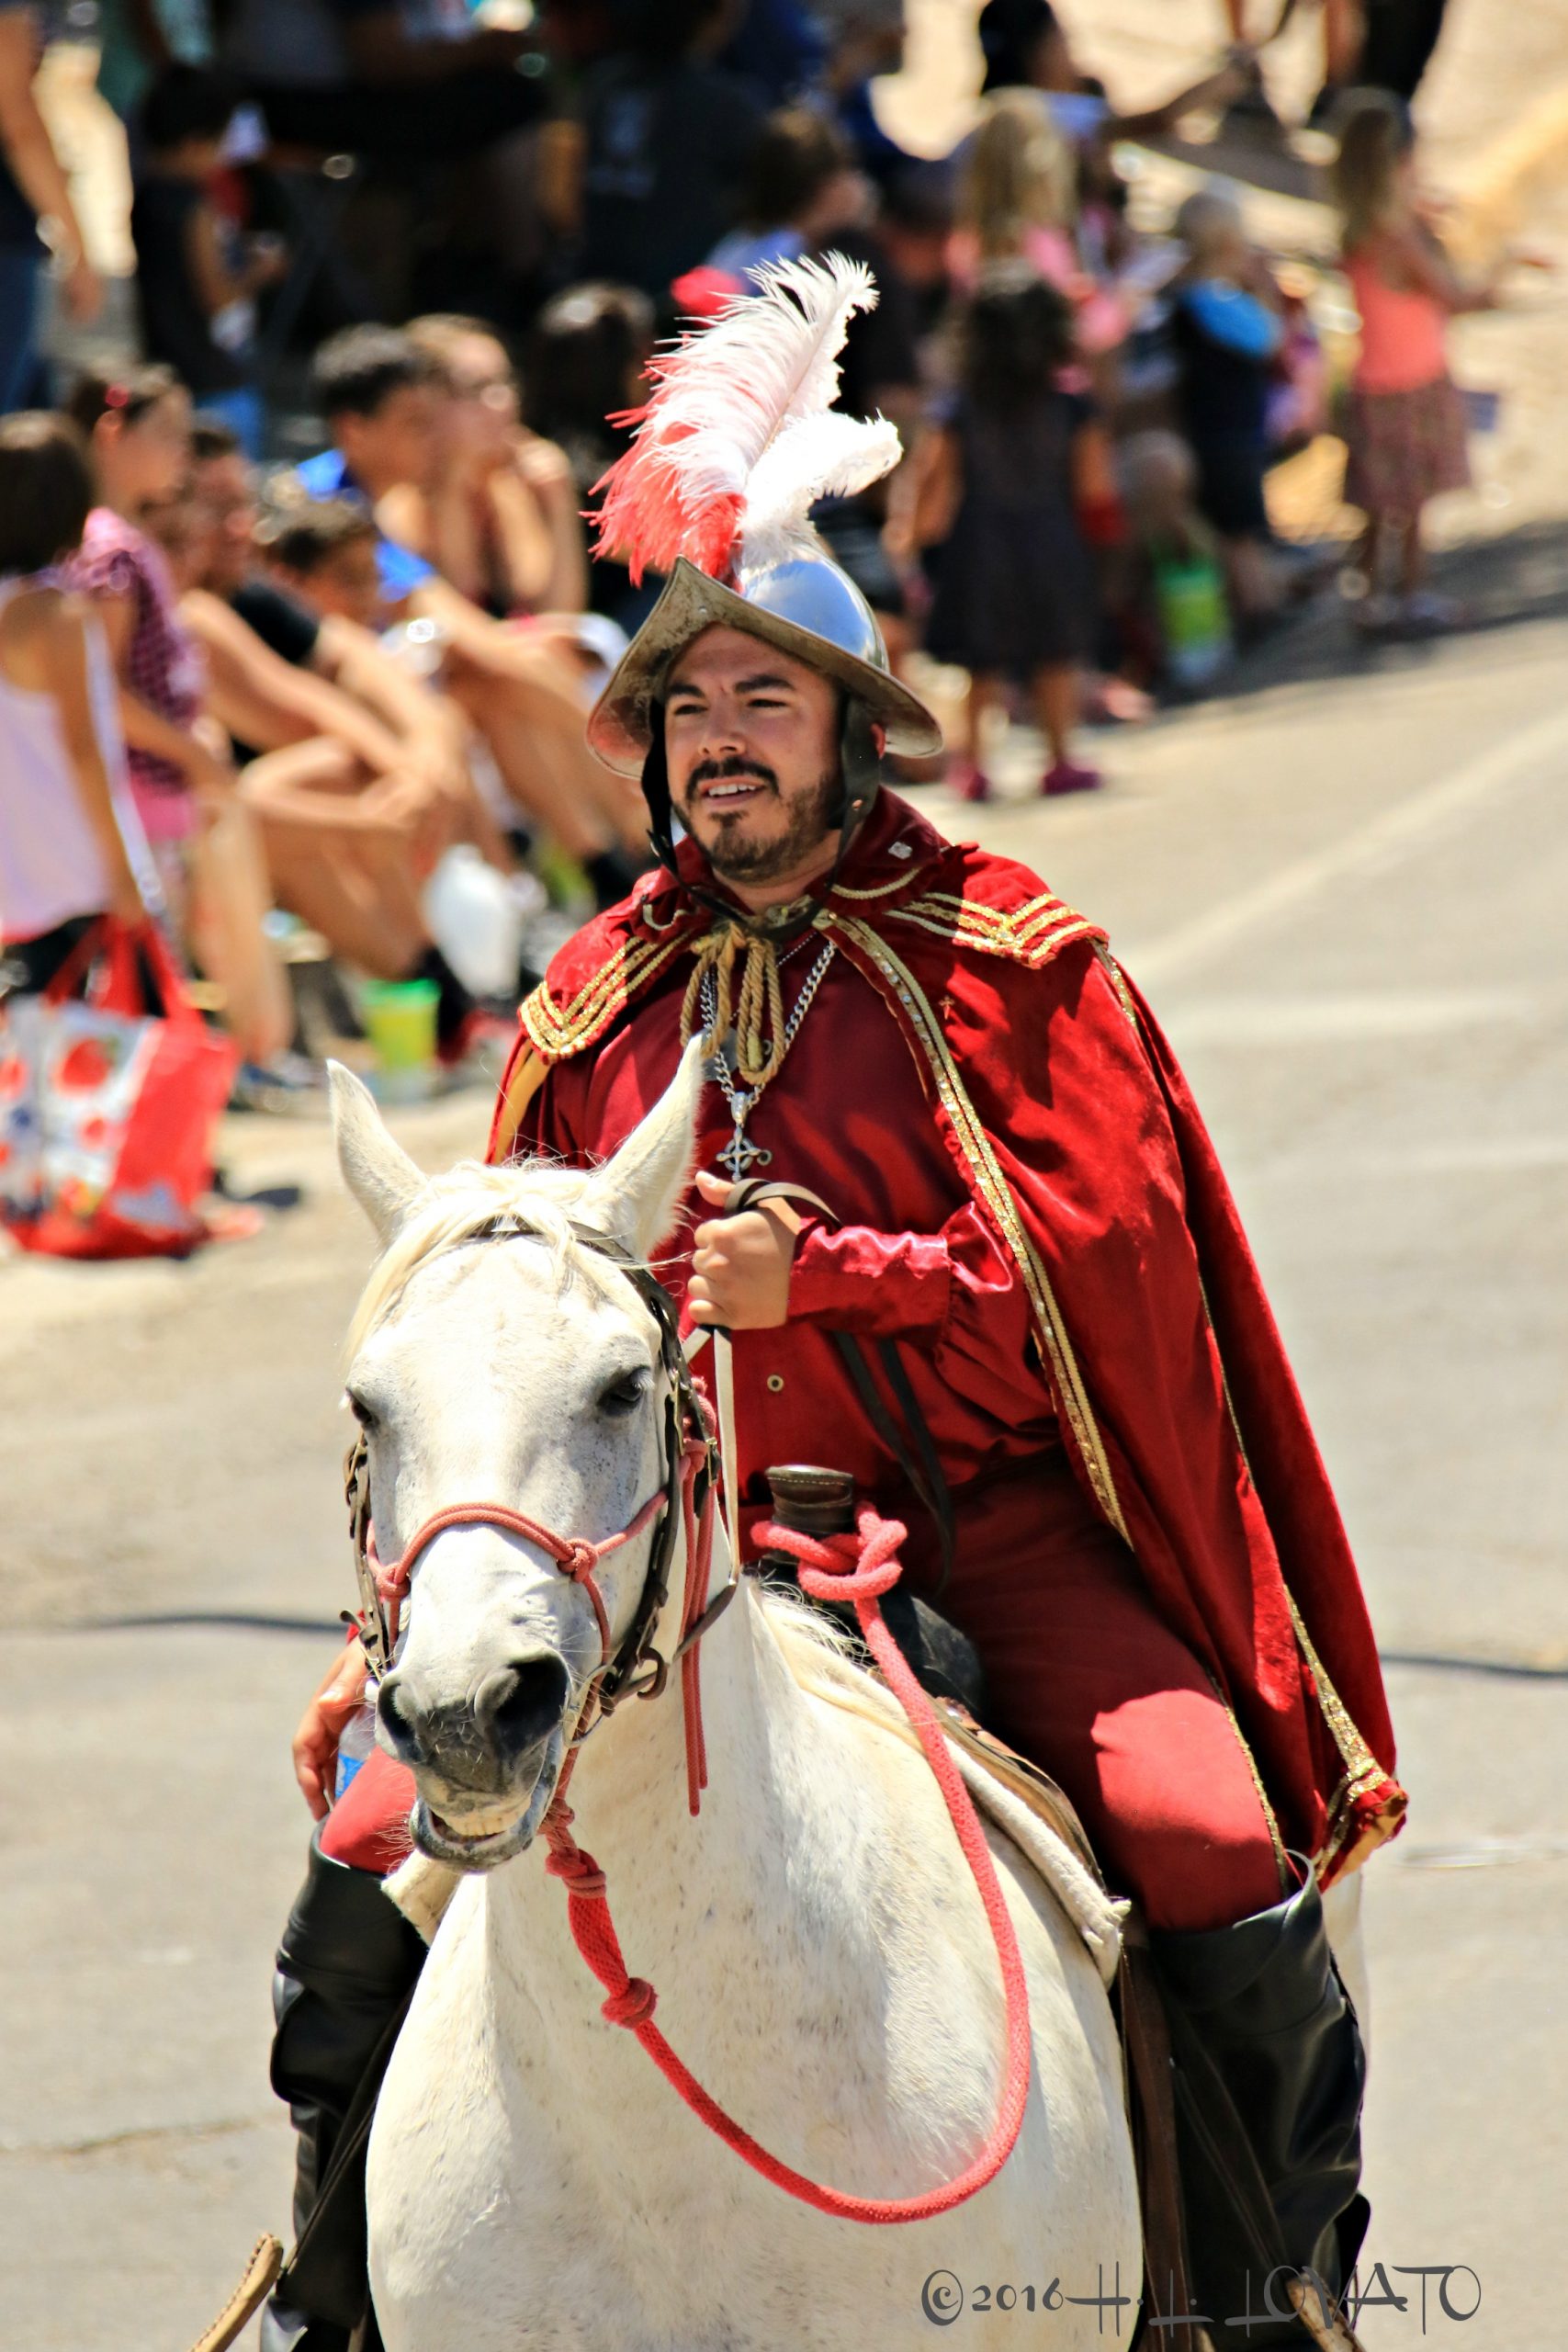 Man on horse dressed as a conquistador